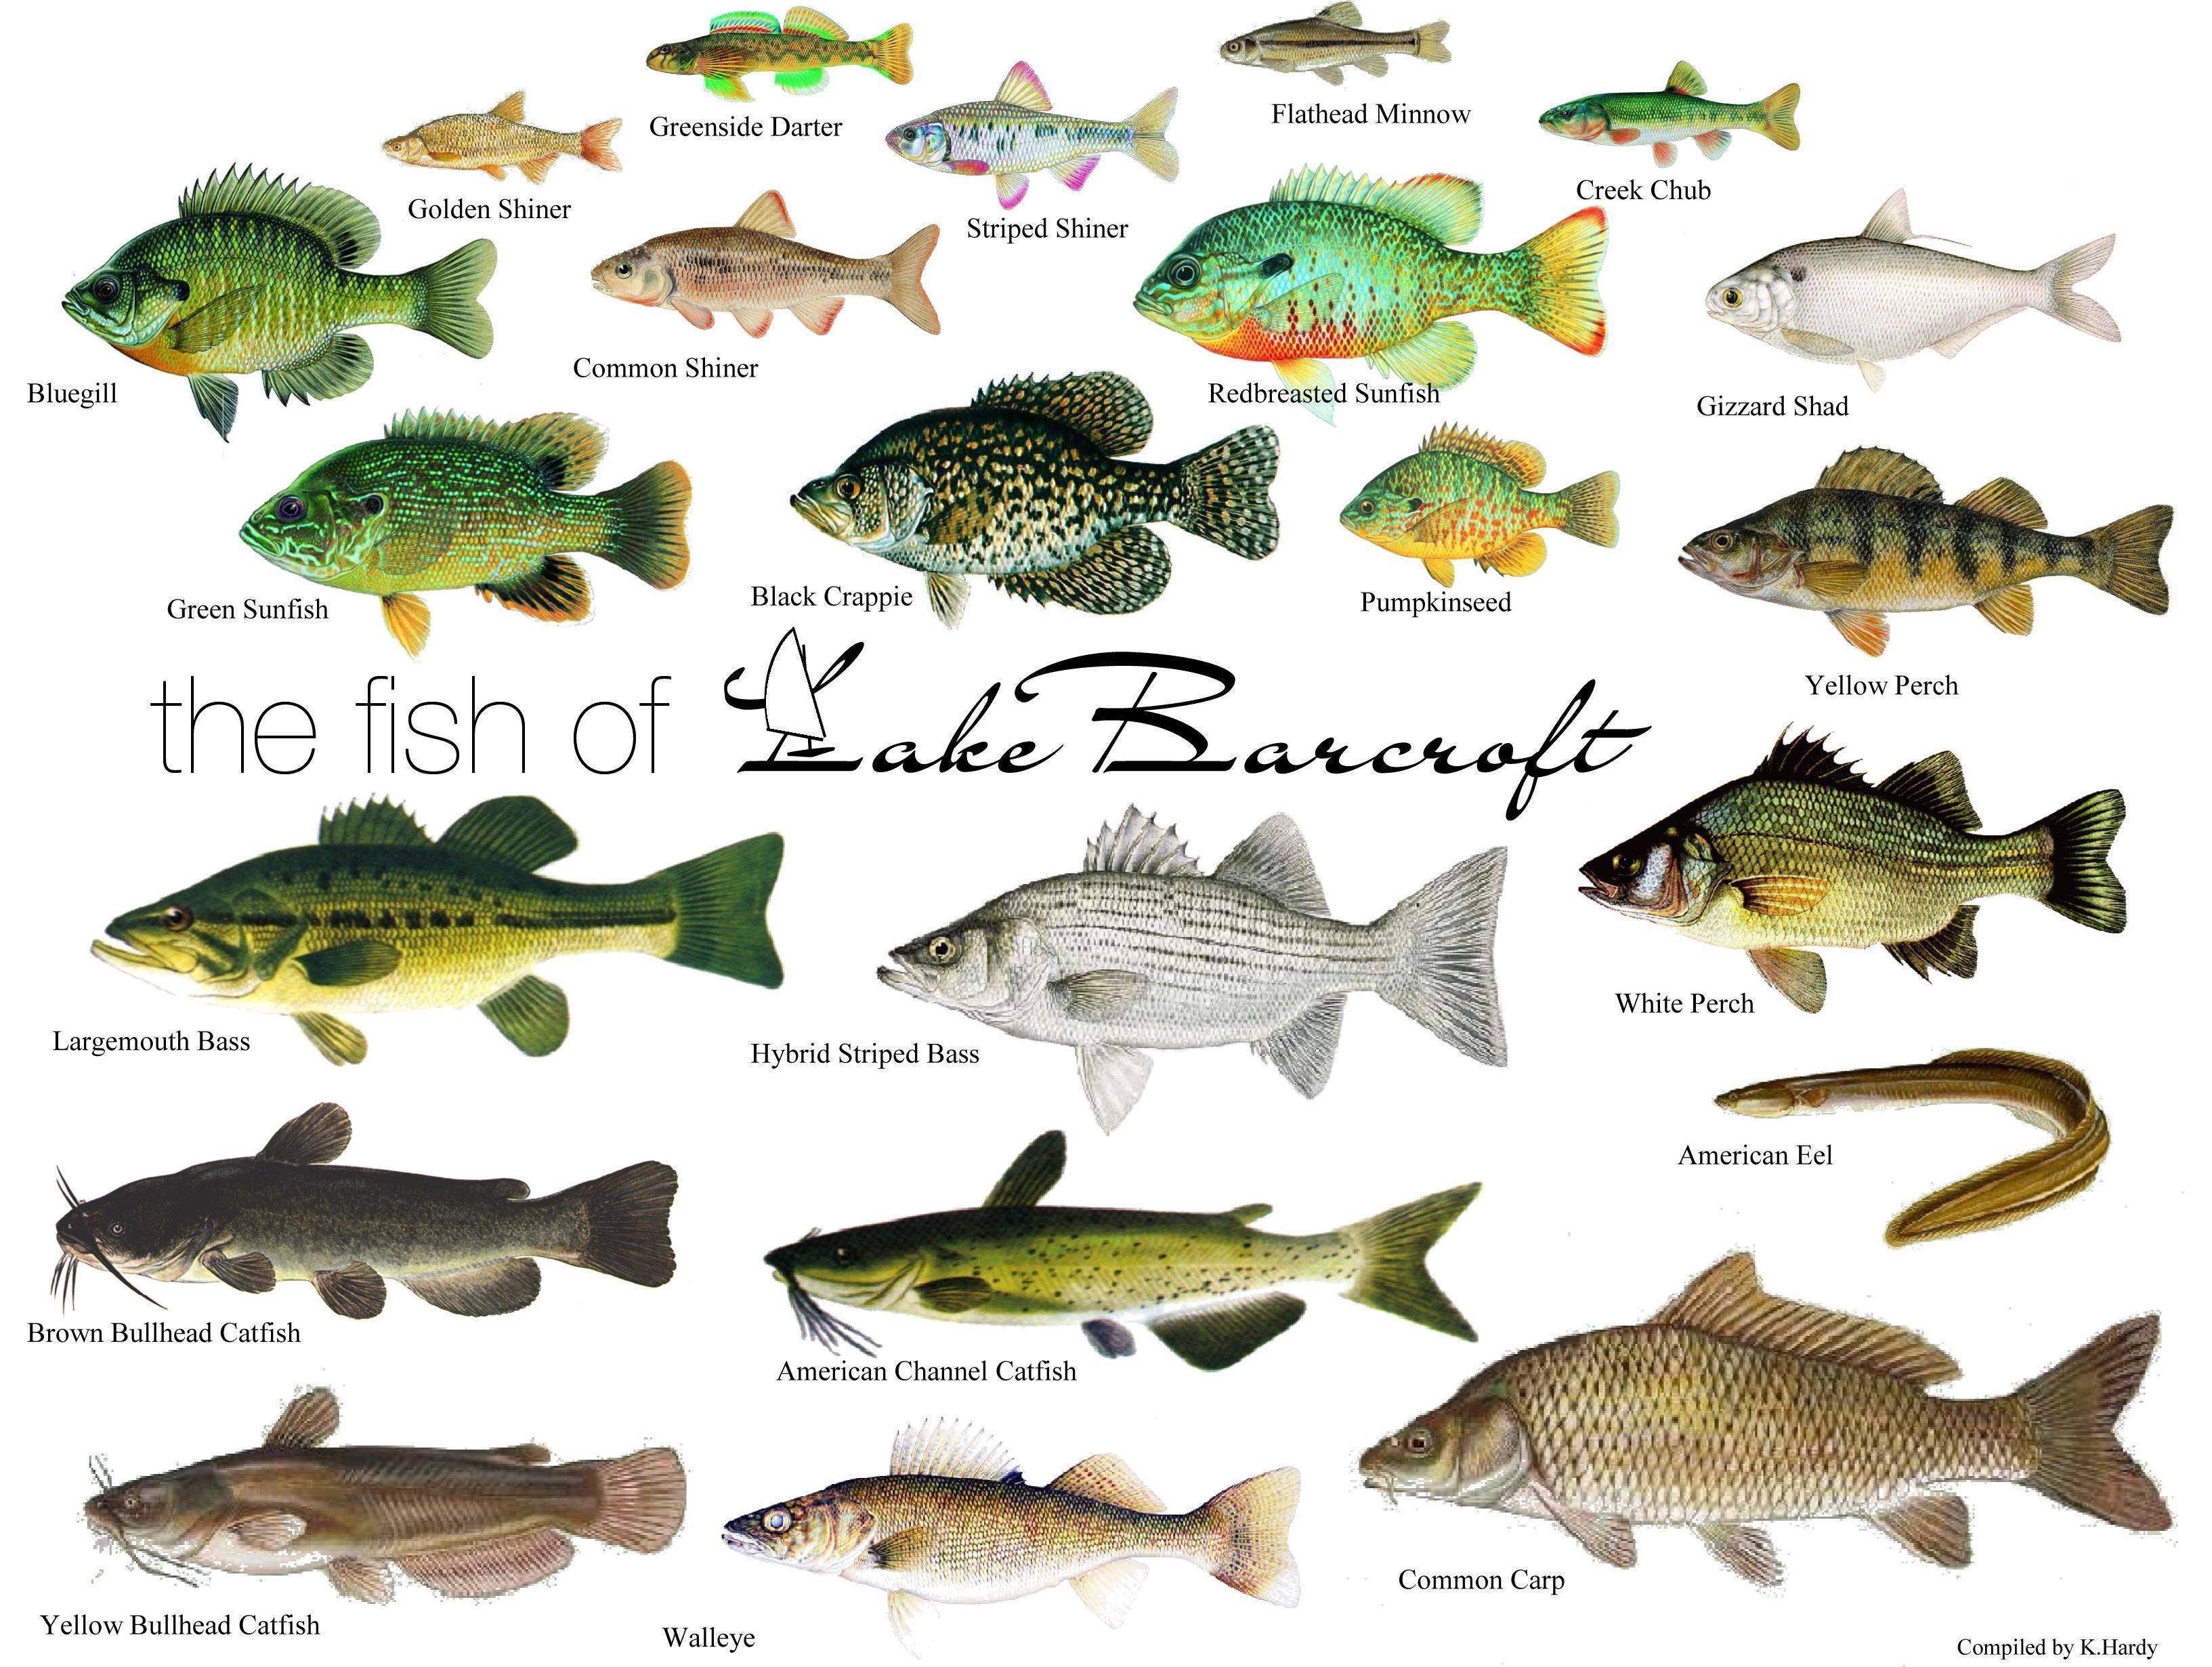 Рыболовные снасти - основные виды и правила использования
рыболовные снасти - основные виды и правила использования